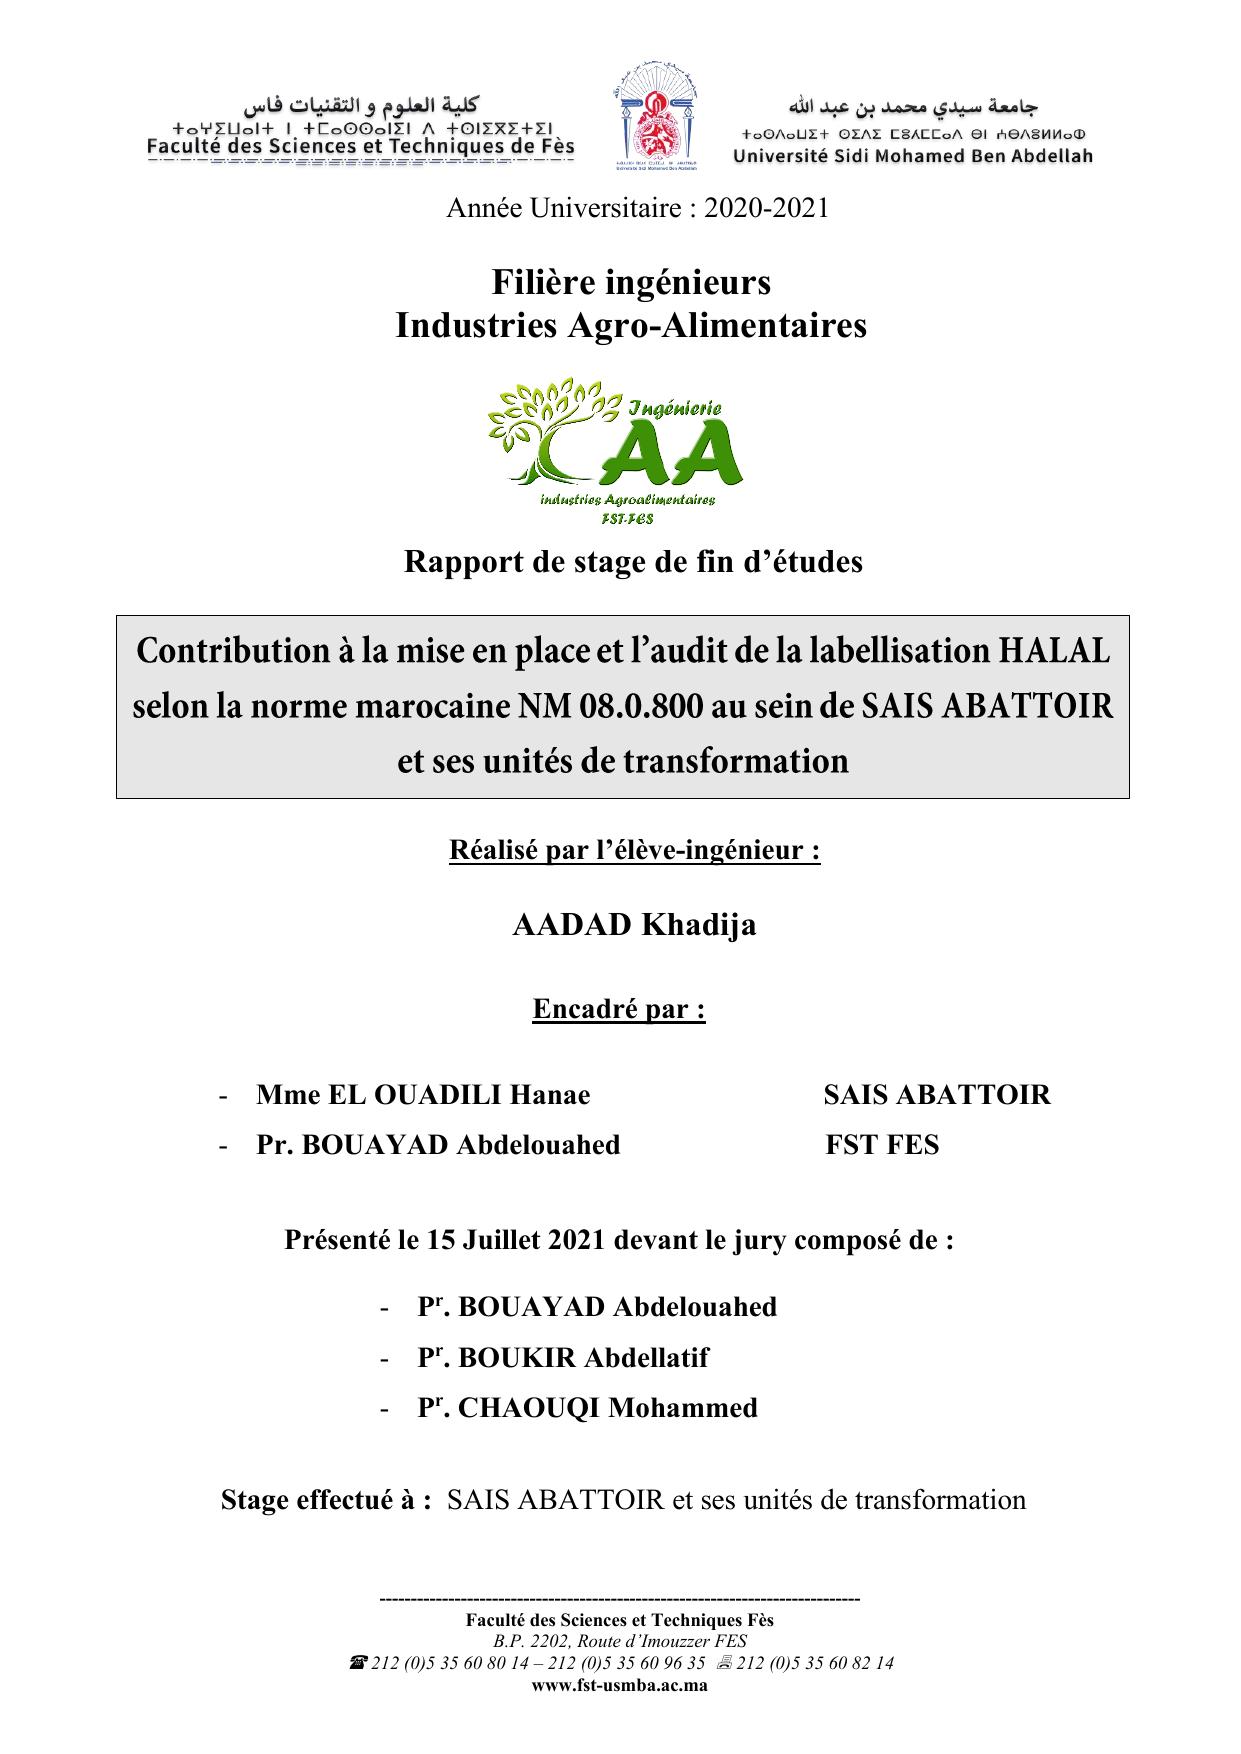 Contribution à la mise en place et l’audit de la labellisation HALAL selon la norme marocaine NM 08.0.800 au sein de SAIS ABATTOIR et ses unités de transformation